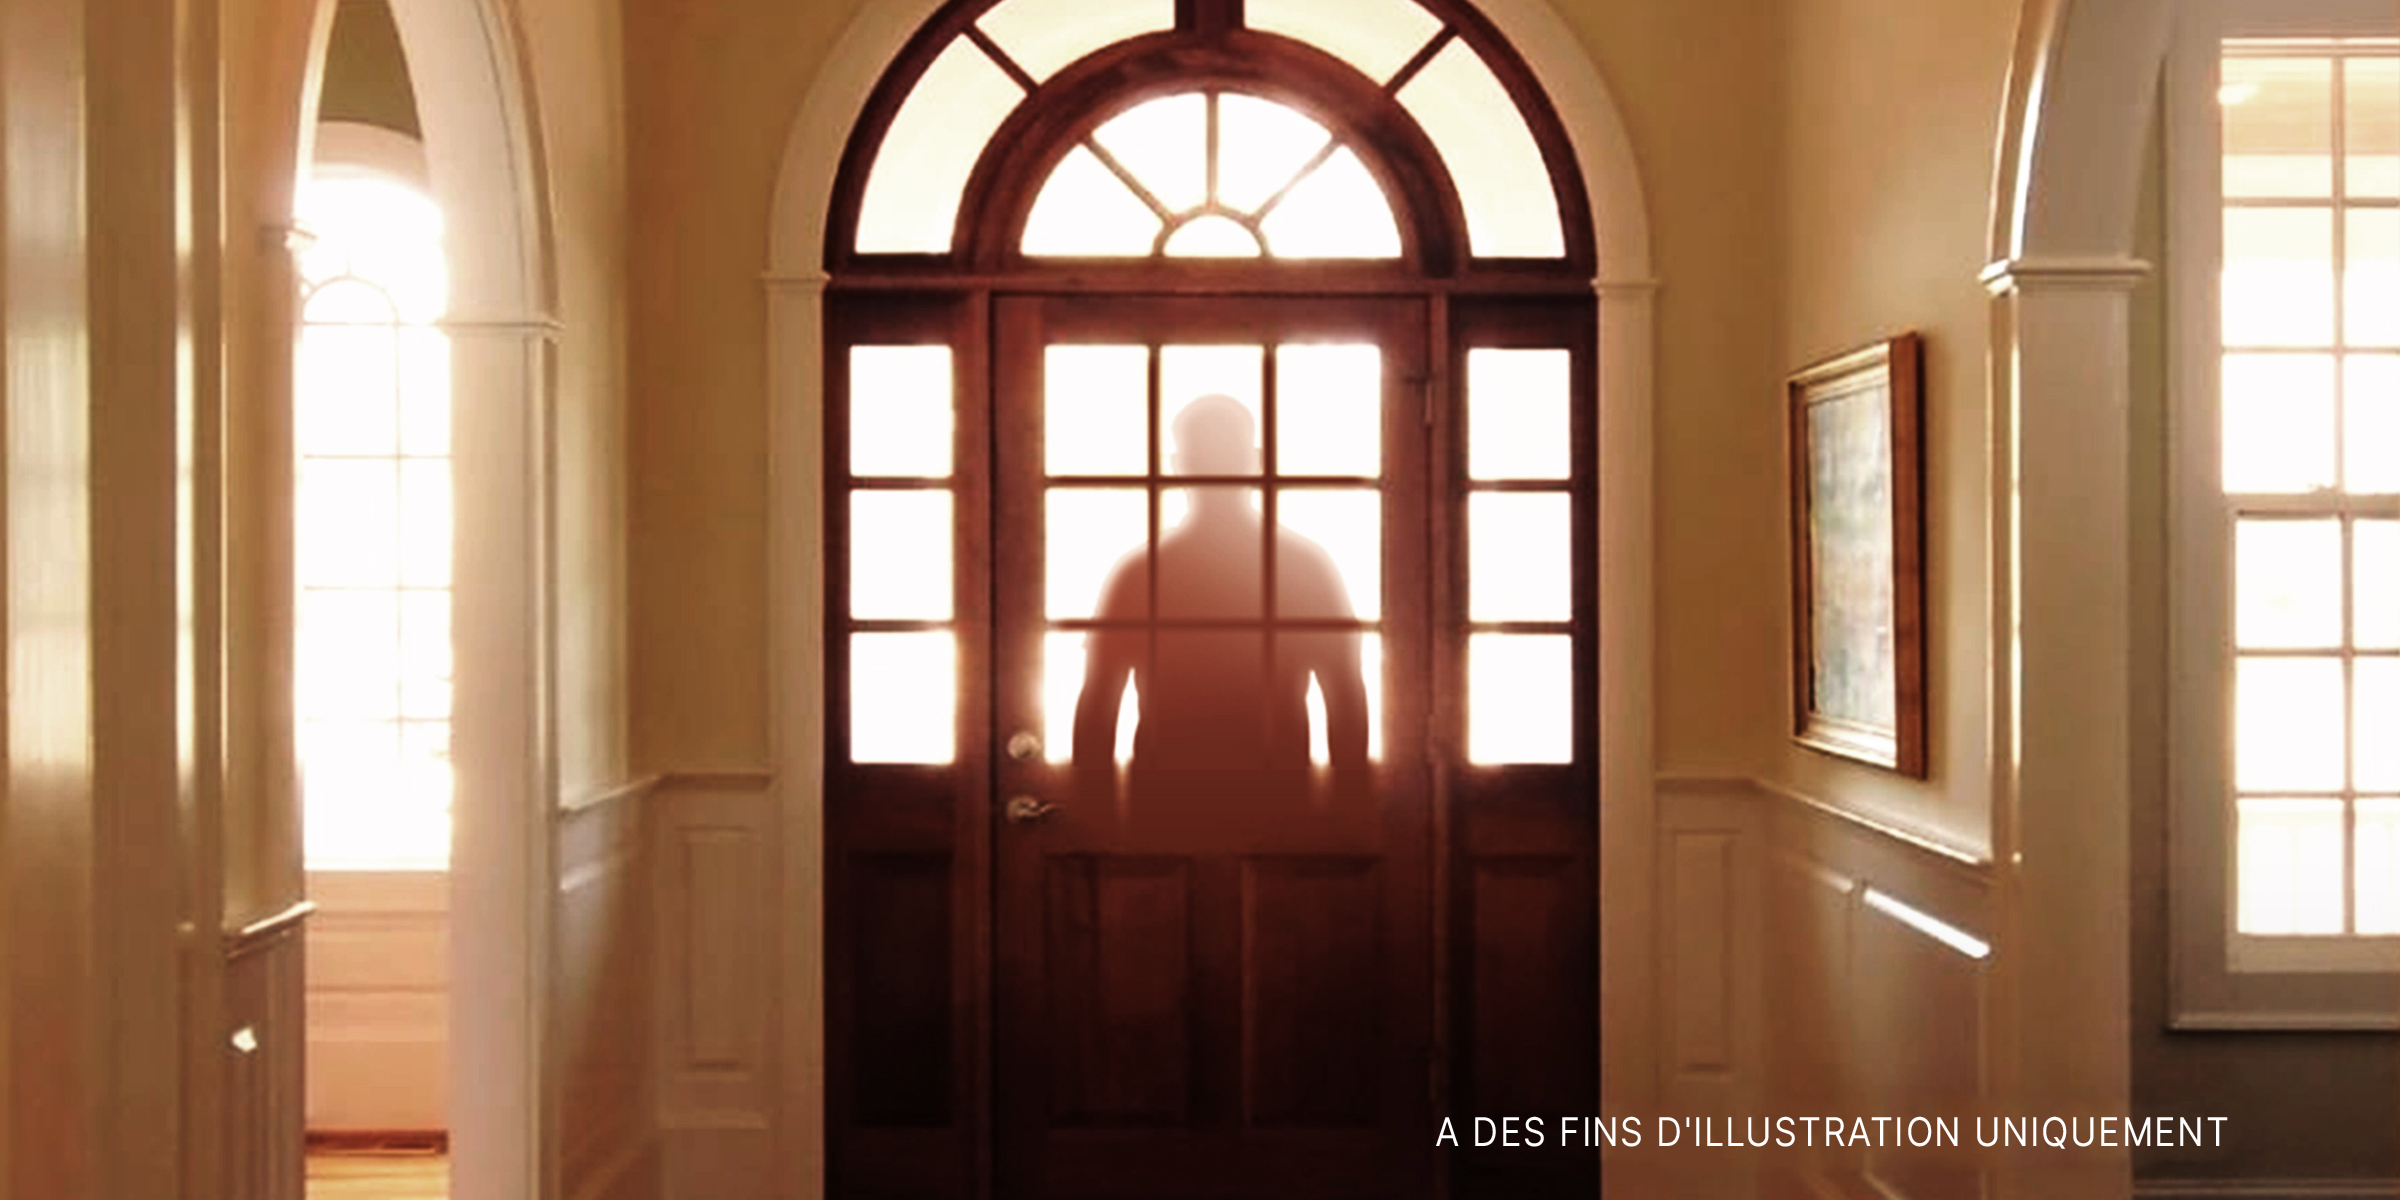 La silhouette d'un homme devant une porte vitrée | Source : Getty Images